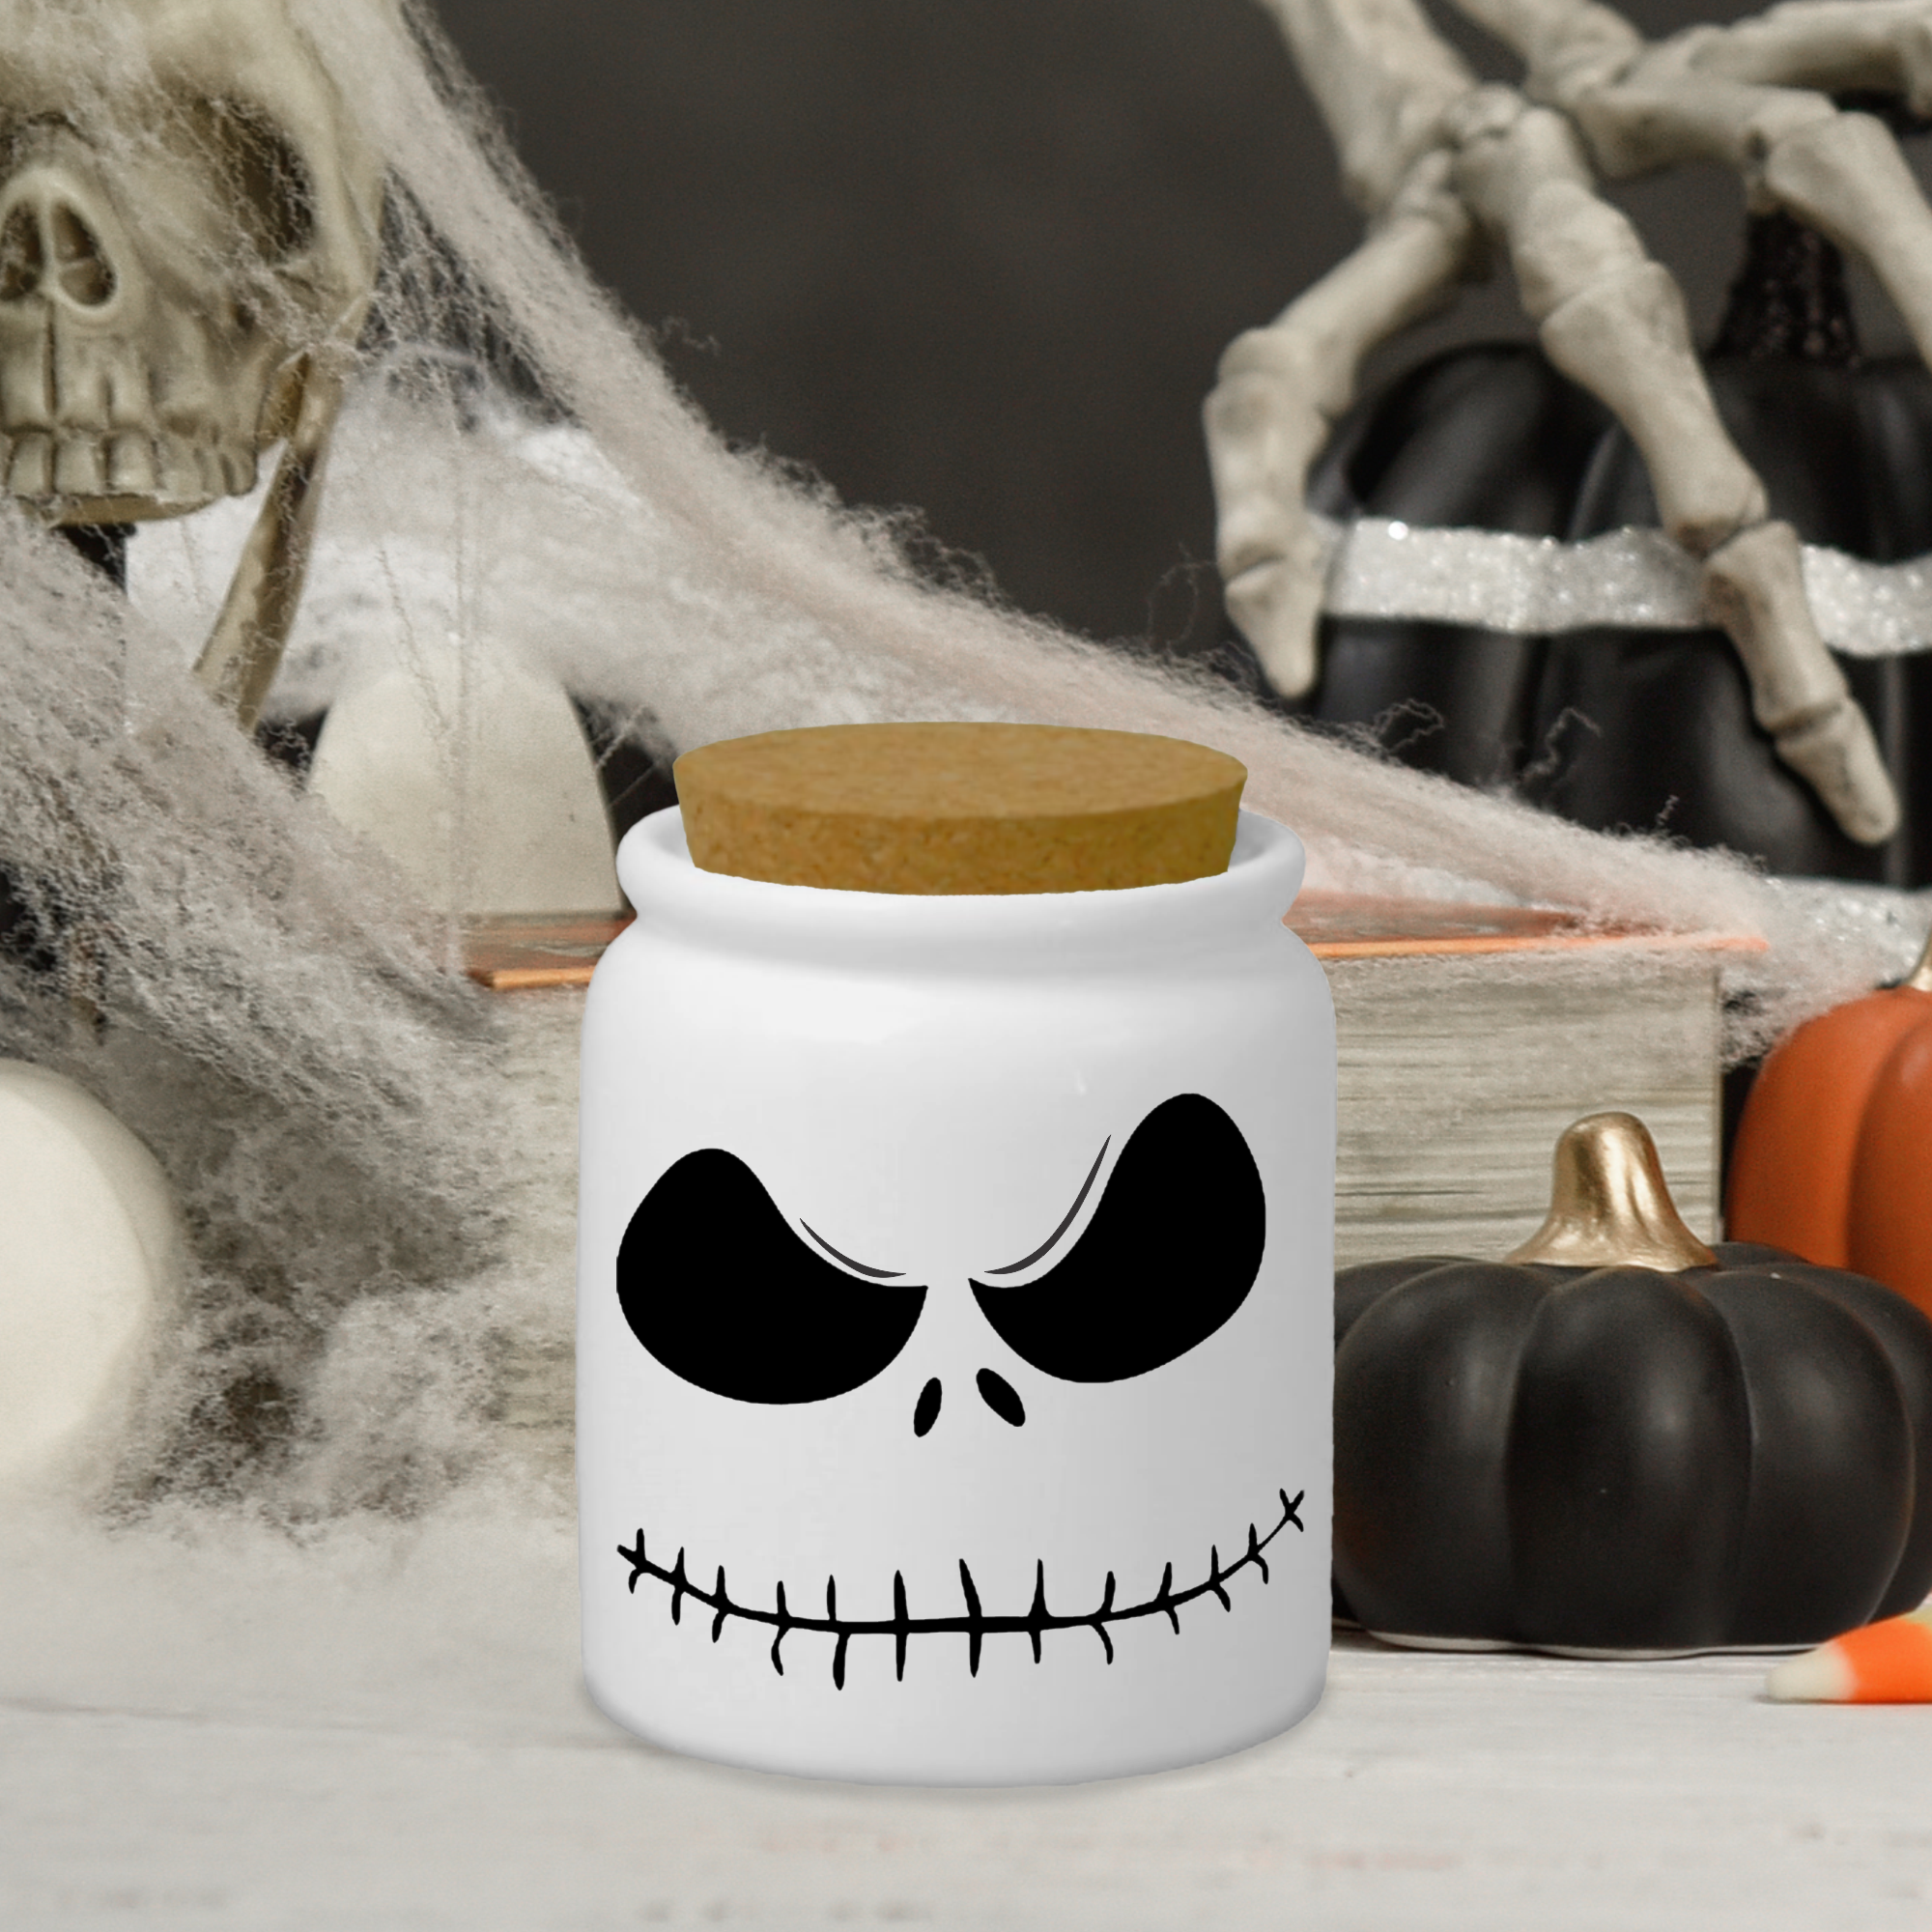 Halloween Gift Jar